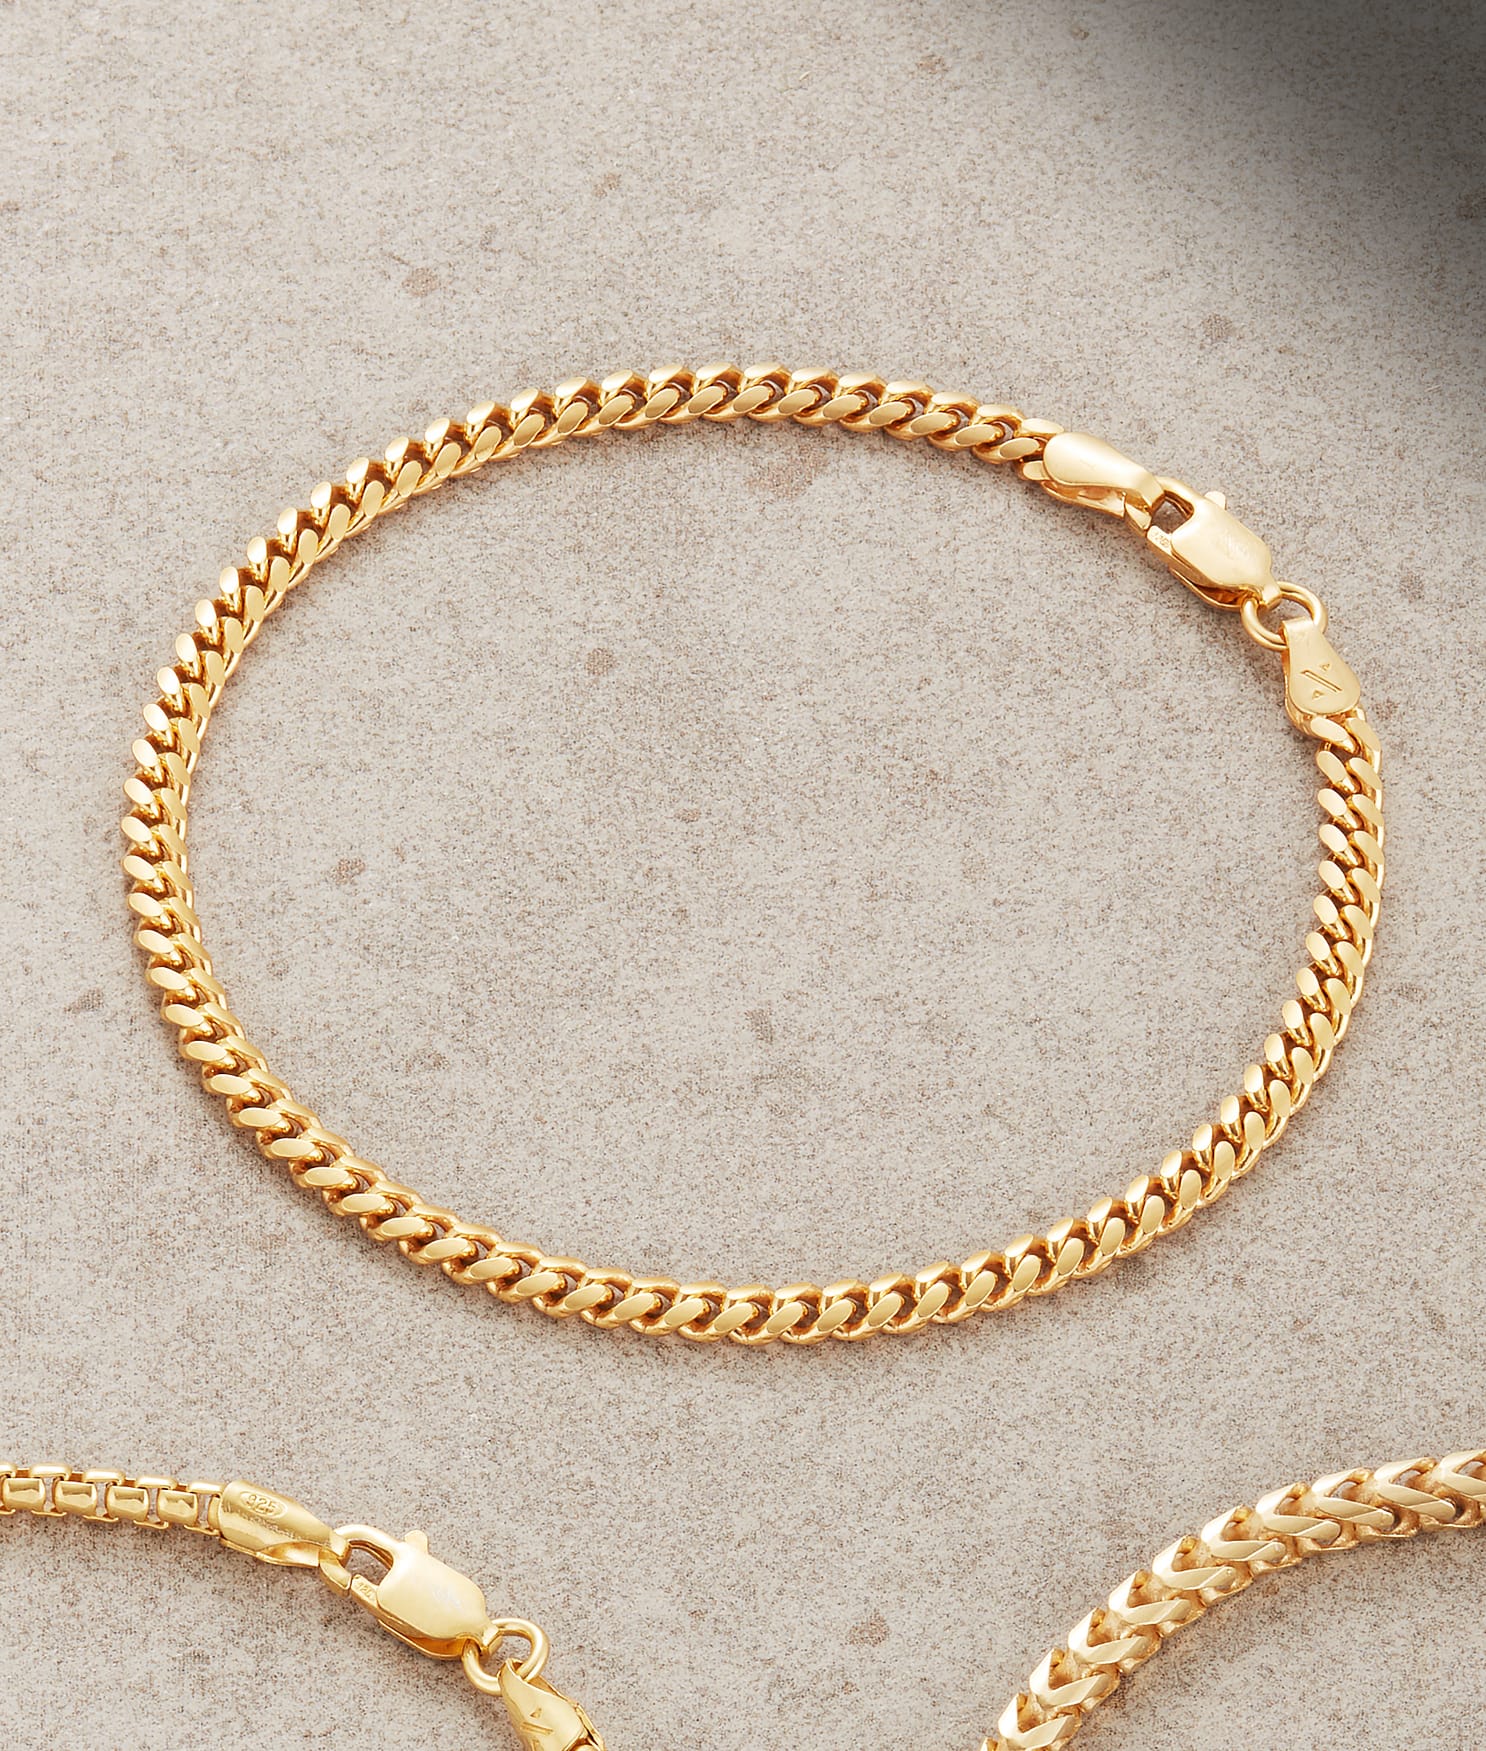 Image Cuban Link Bracelet - 3mm Gold - Higher Quality Standards